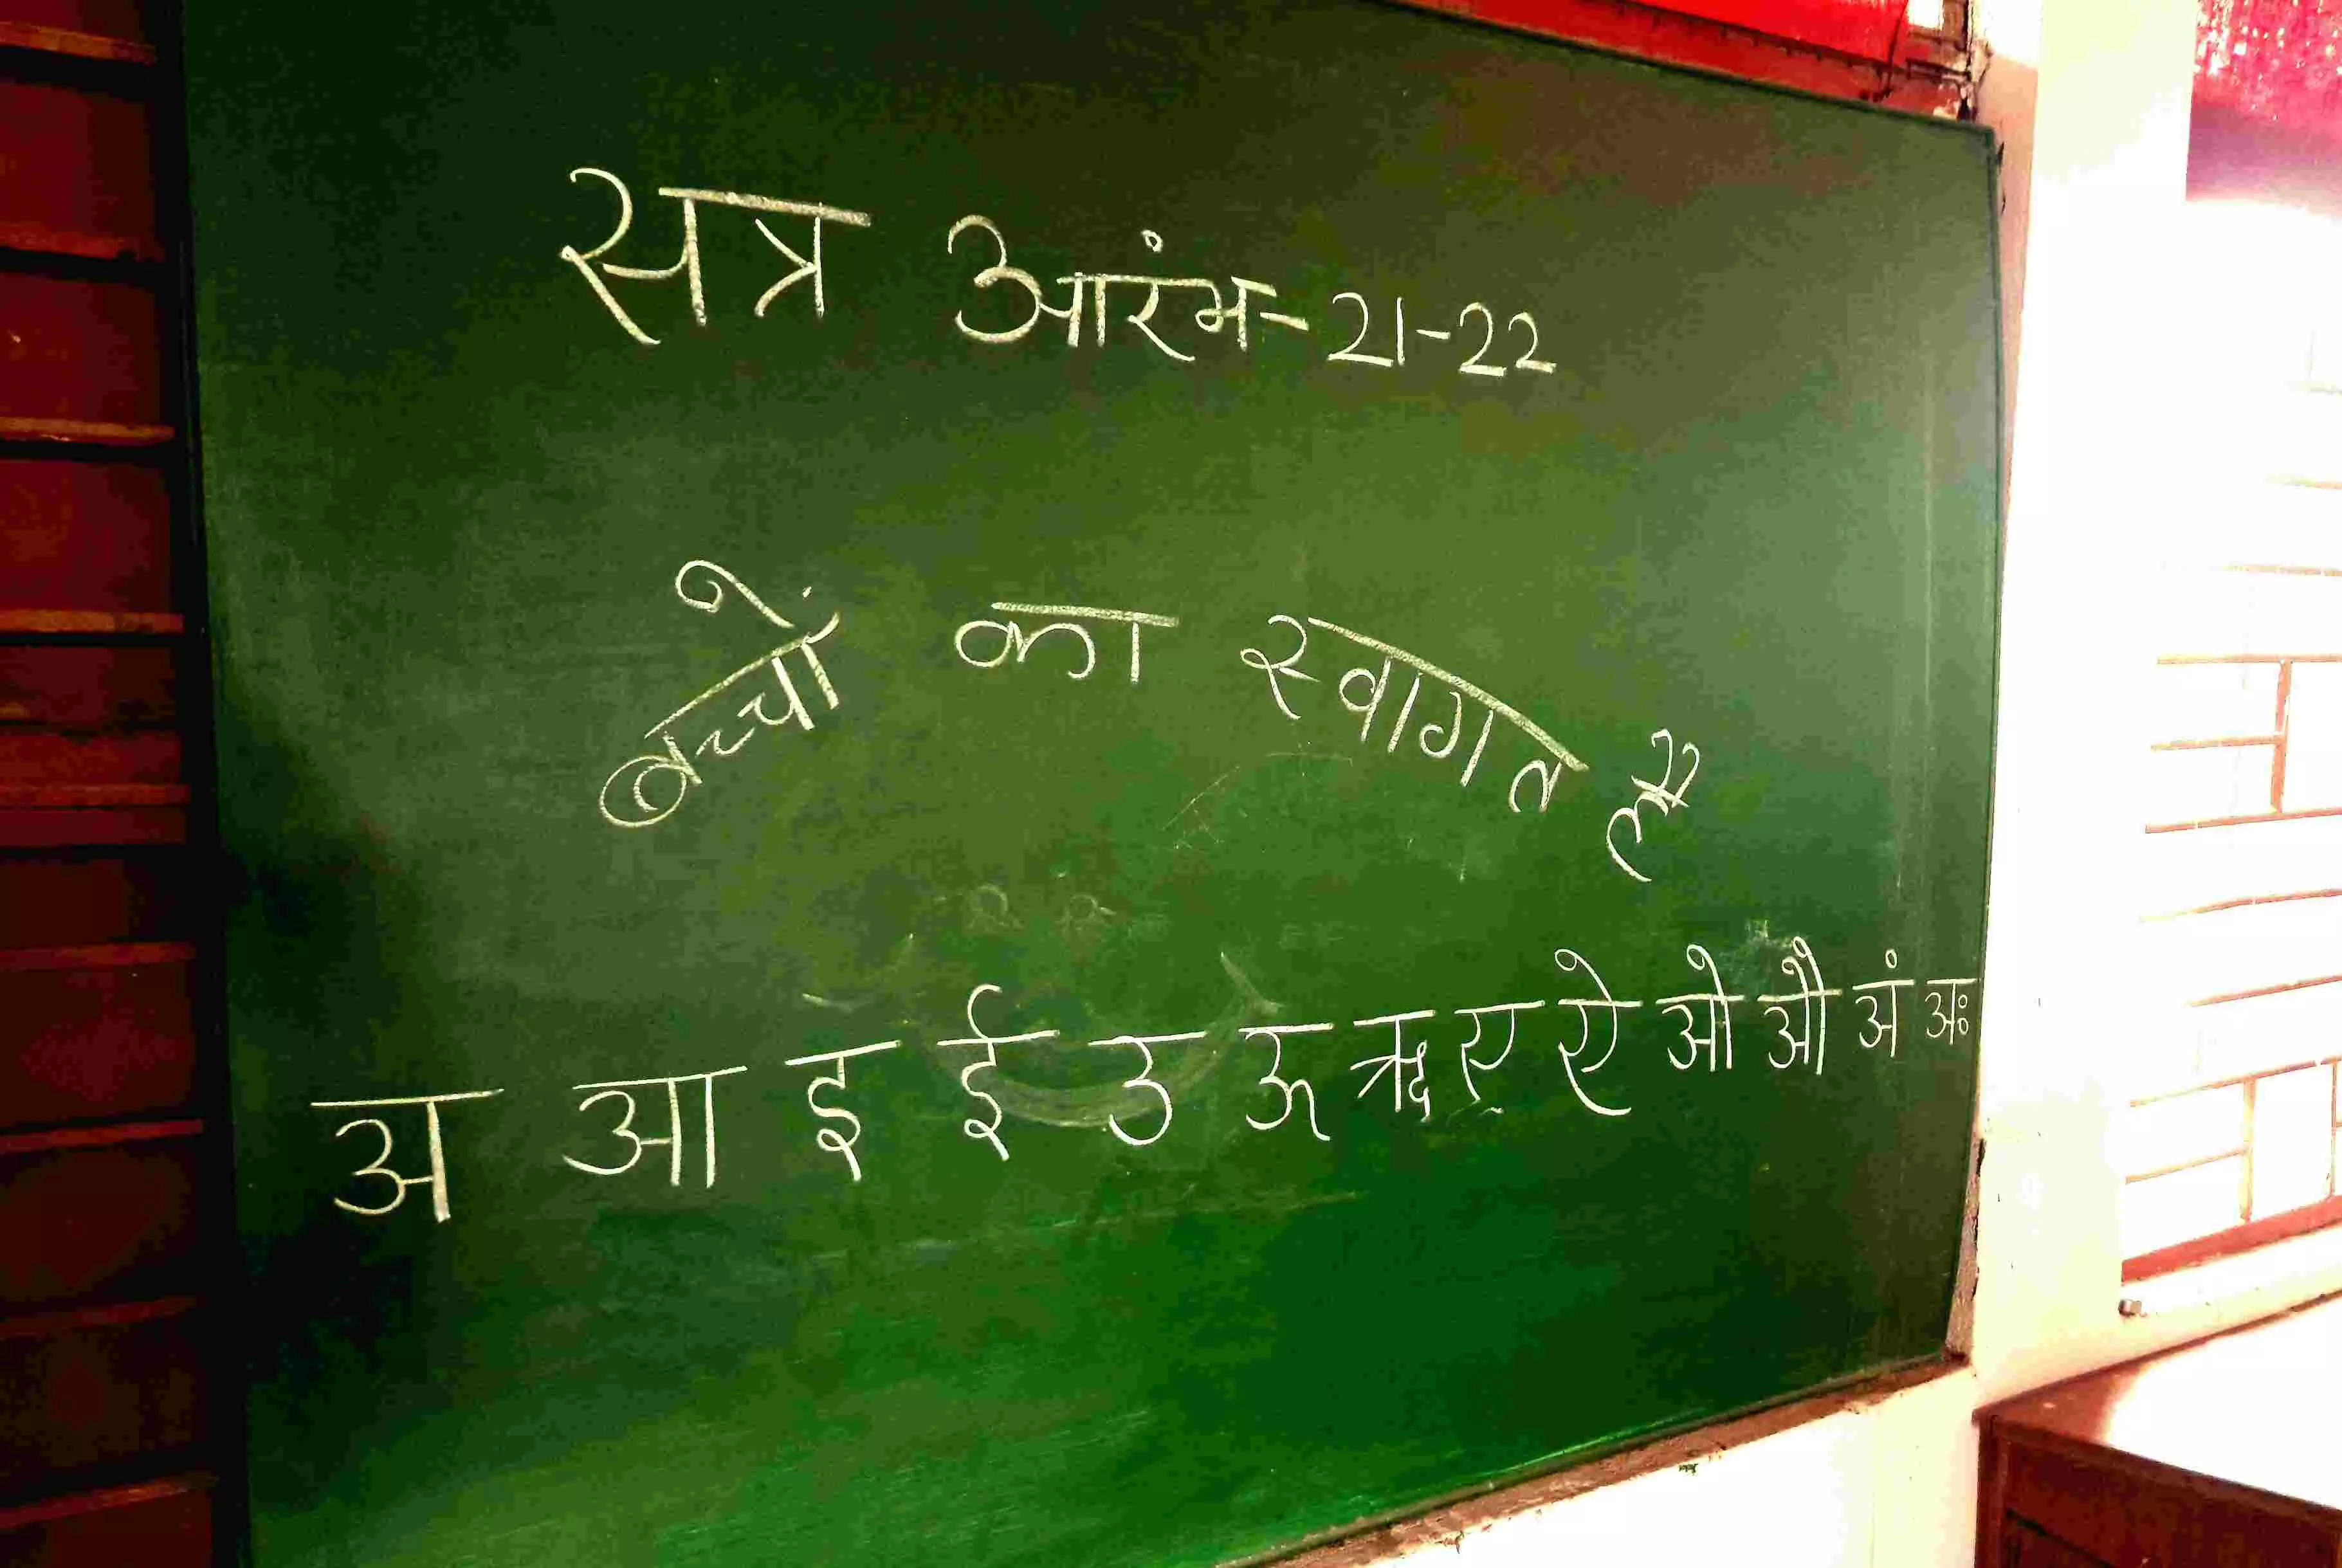 मध्य प्रदेश में 18 महीने बाद खुले स्कूल: दूसरी कक्षा के बच्चे को कुछ याद नहीं, पांचवीं के बच्चे नहीं पढ़ पाए हिंदी की किताब